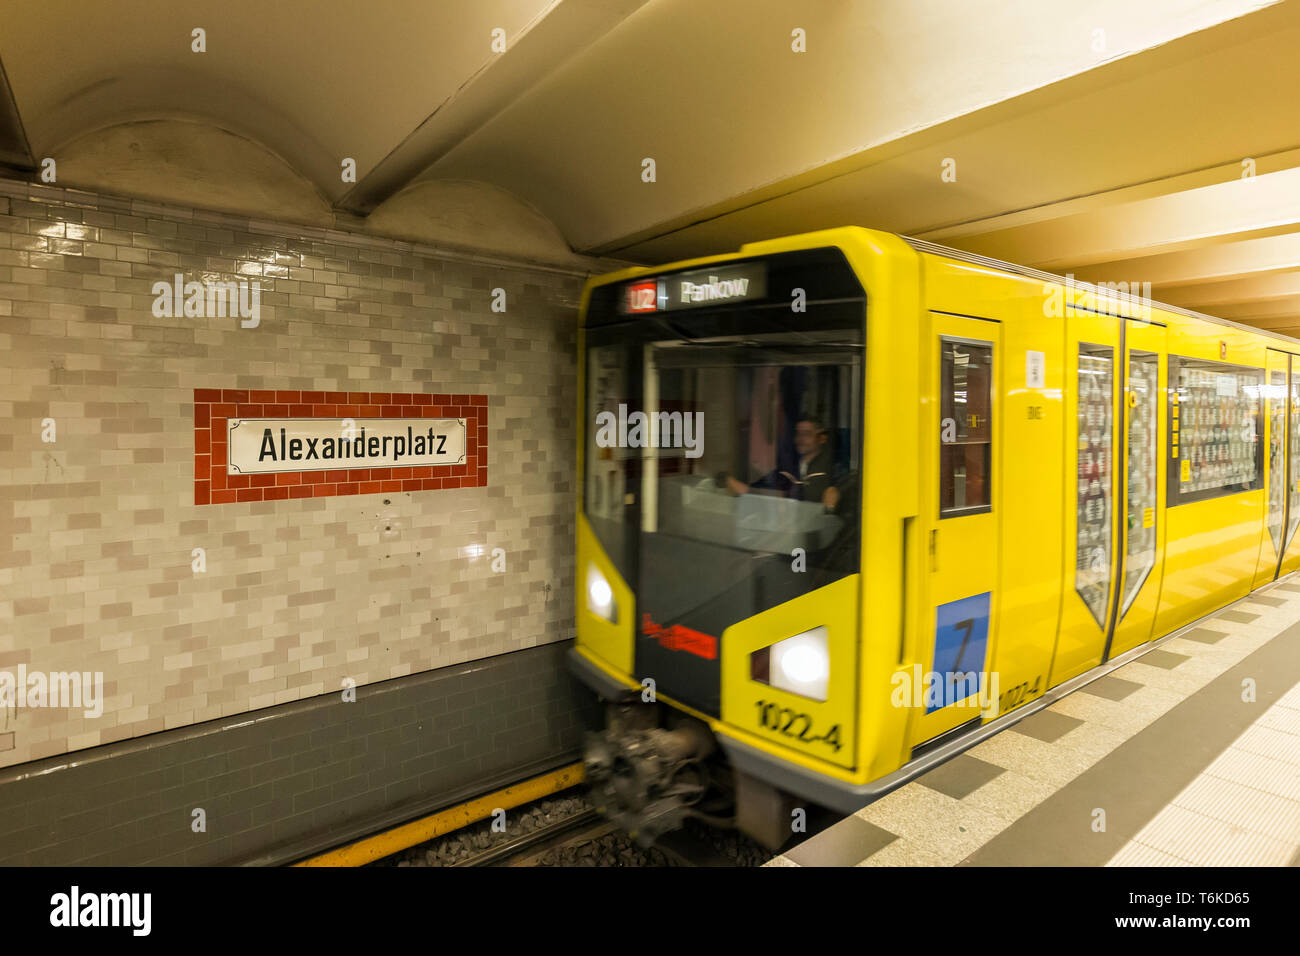 Alte Zeichen der Alexanderplatz U-Bahn U-Bahn / U-Bahn Station auf eine Kachel Wand und gelbe U-Bahn Zug nähert sich in Berlin. Stockfoto